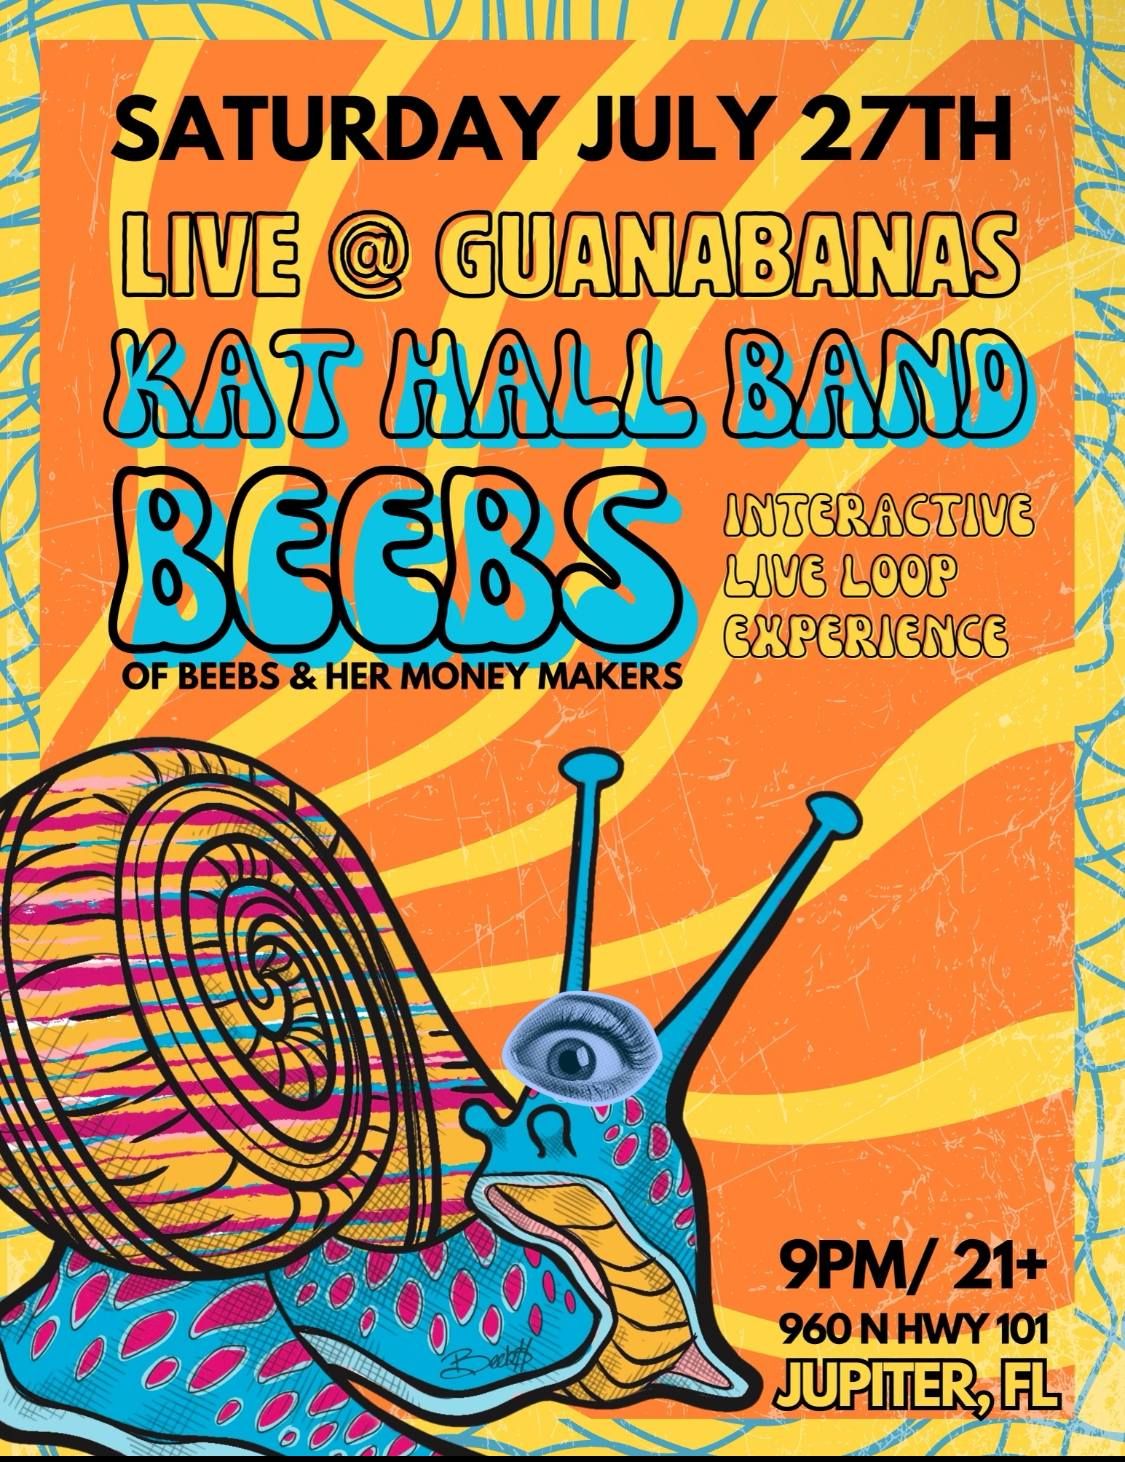 Kat Hall with Beebs live at Guanabanas Jupiter.